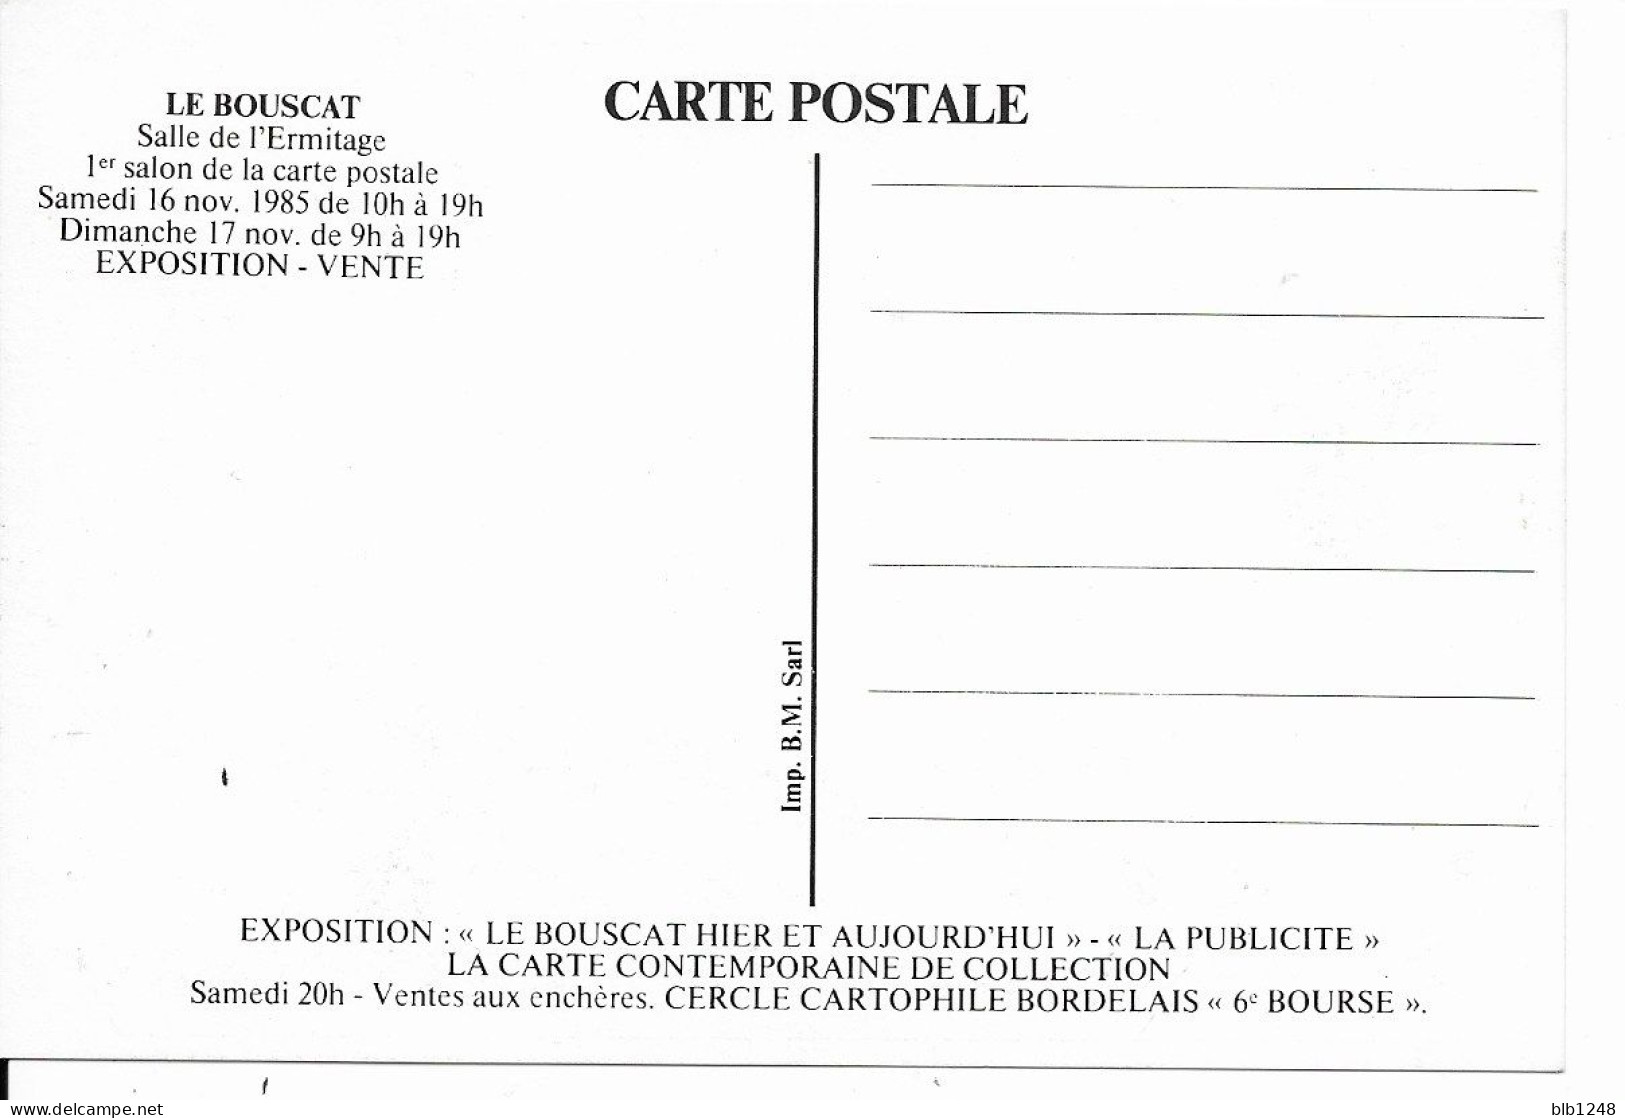 Bourses & Salons De Collections Le Bouscat 1er Salon De La Carte Postale 1985 Programme Plaza De Toros 1930 - Collector Fairs & Bourses